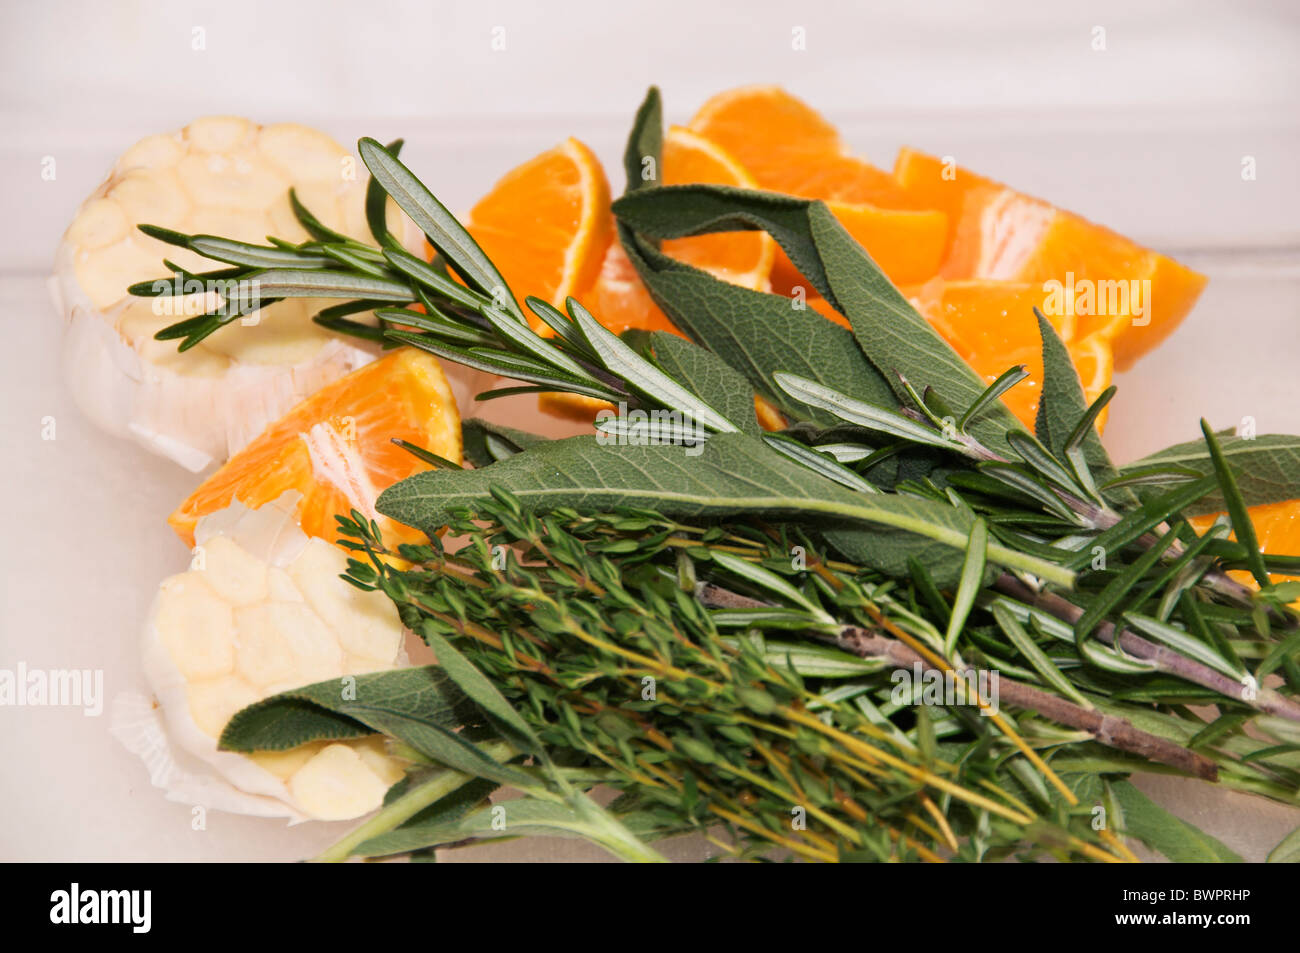 Eine Vielzahl von frischen Kräutern, Knoblauch und Mandarinen sind bereit, innerhalb der Türkei platziert werden, bevor es gebraten wird. Stockfoto